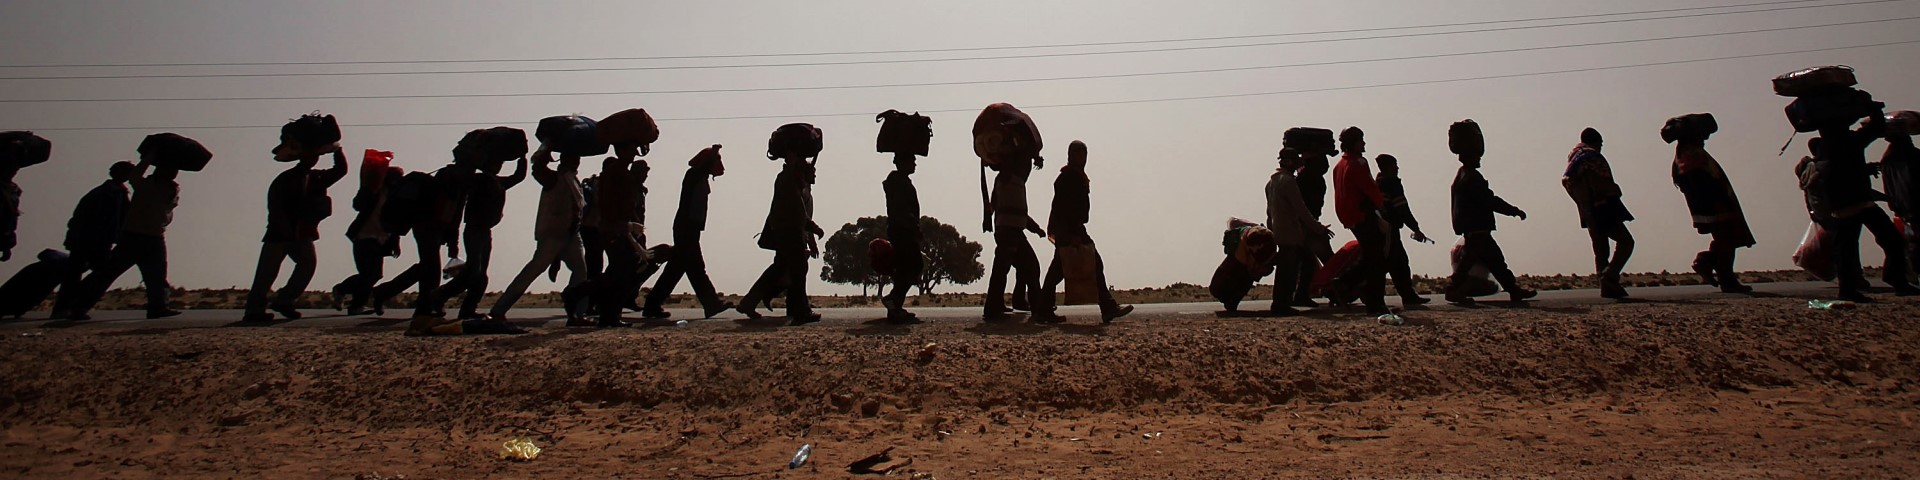 Eine Gruppe von Menschen, die in der Wüste laufen und schweres Gepäck tragen.